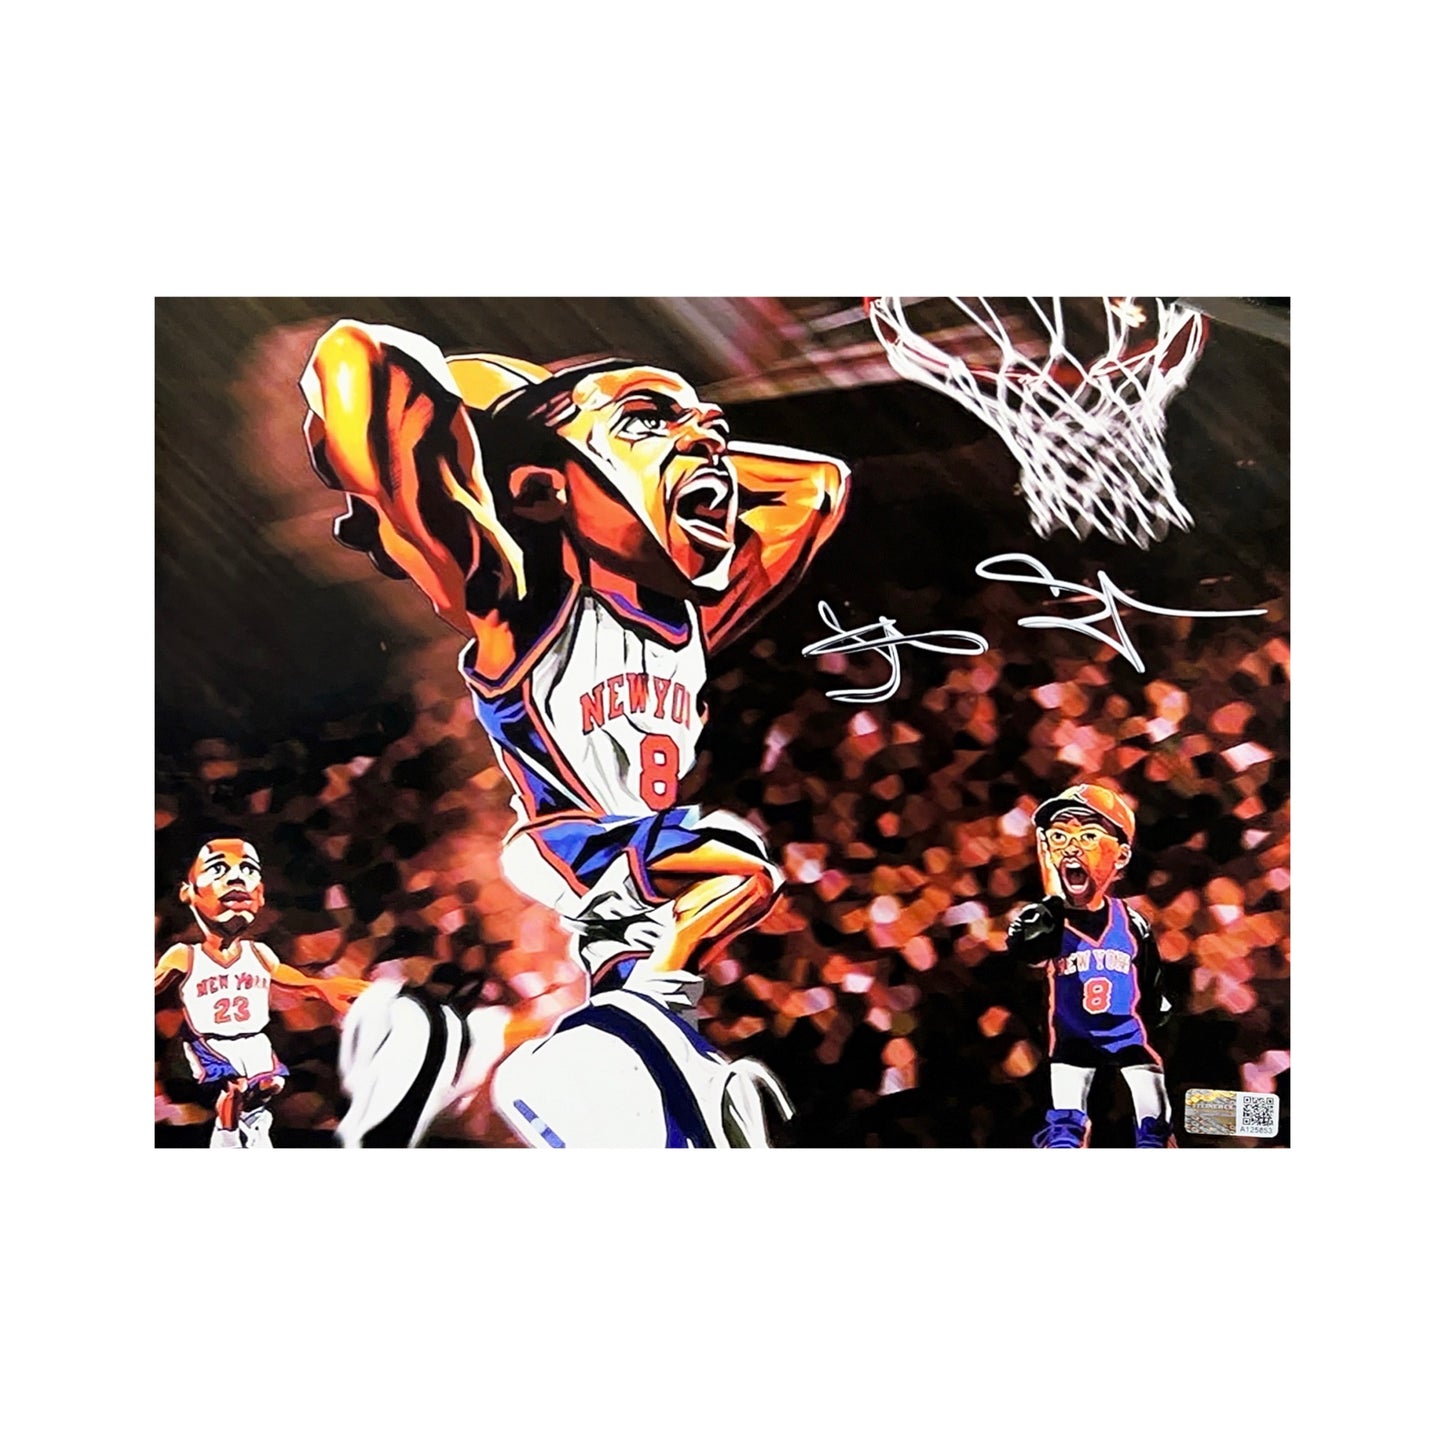 Latrell Sprewell Autographed New York Knicks Dunk Cartoon 8x10 Steiner CX